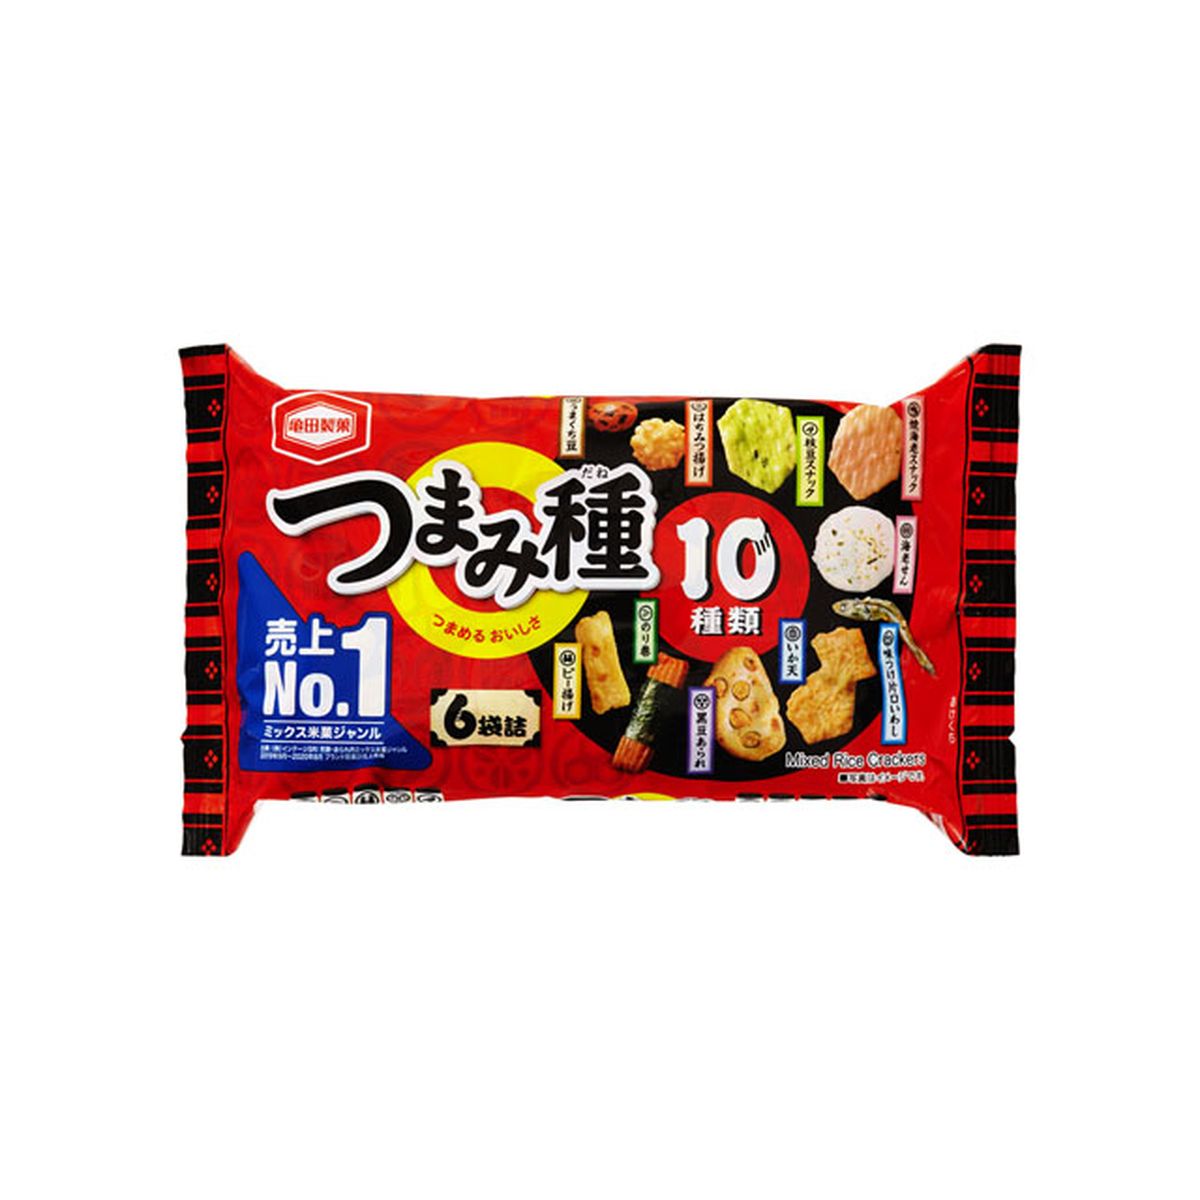 【12個入り】亀田製菓 つまみ種 120g